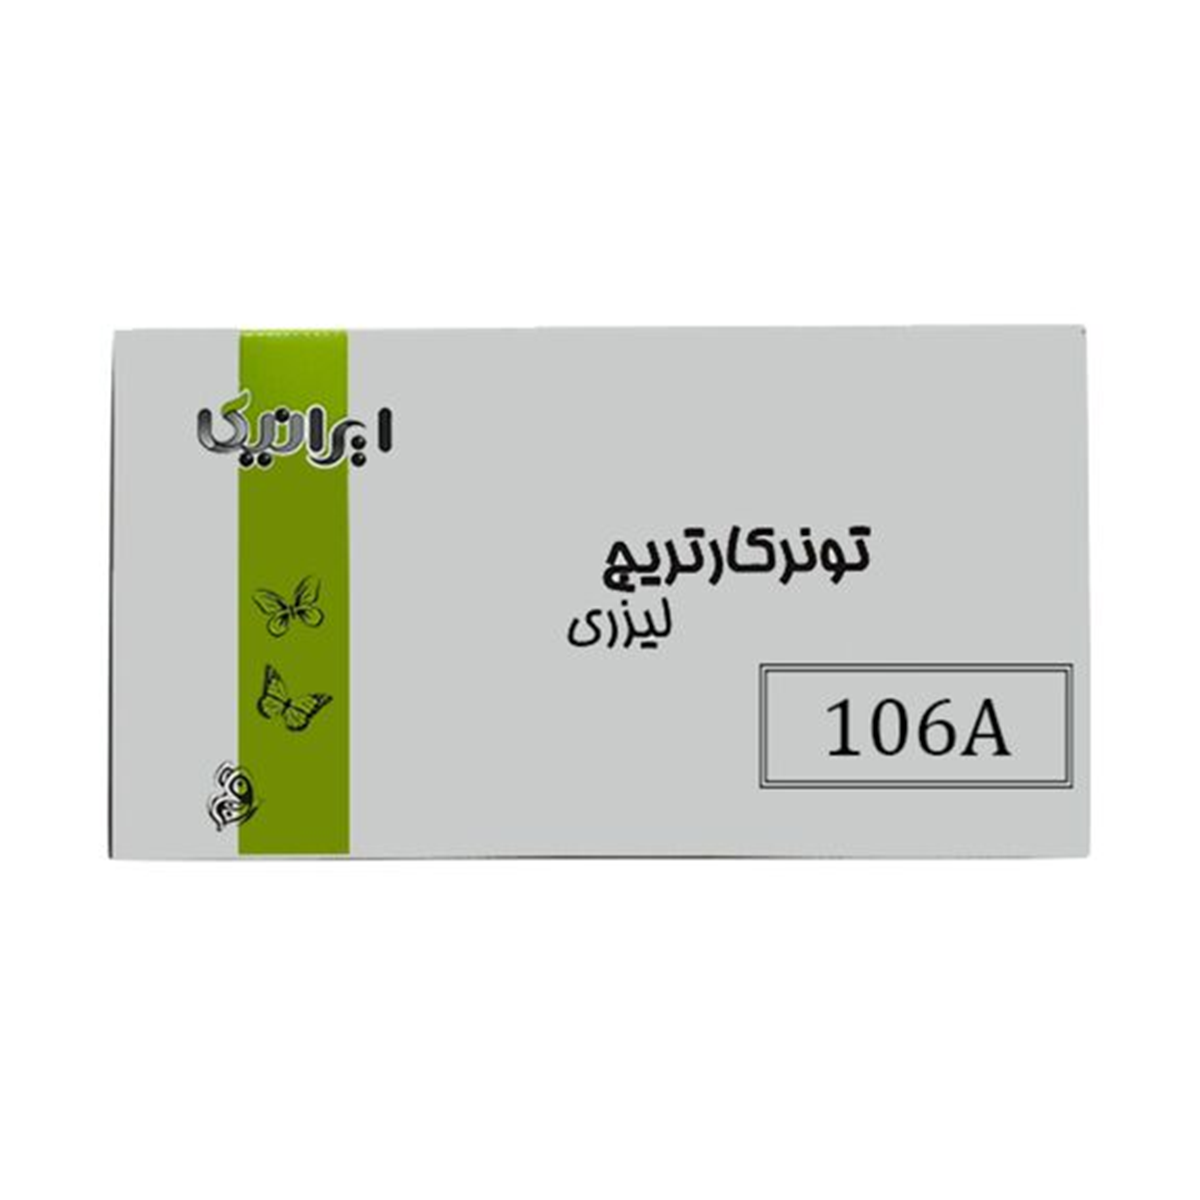 کارتریج ایرانیکا طرح اچ پی 106A مشکی